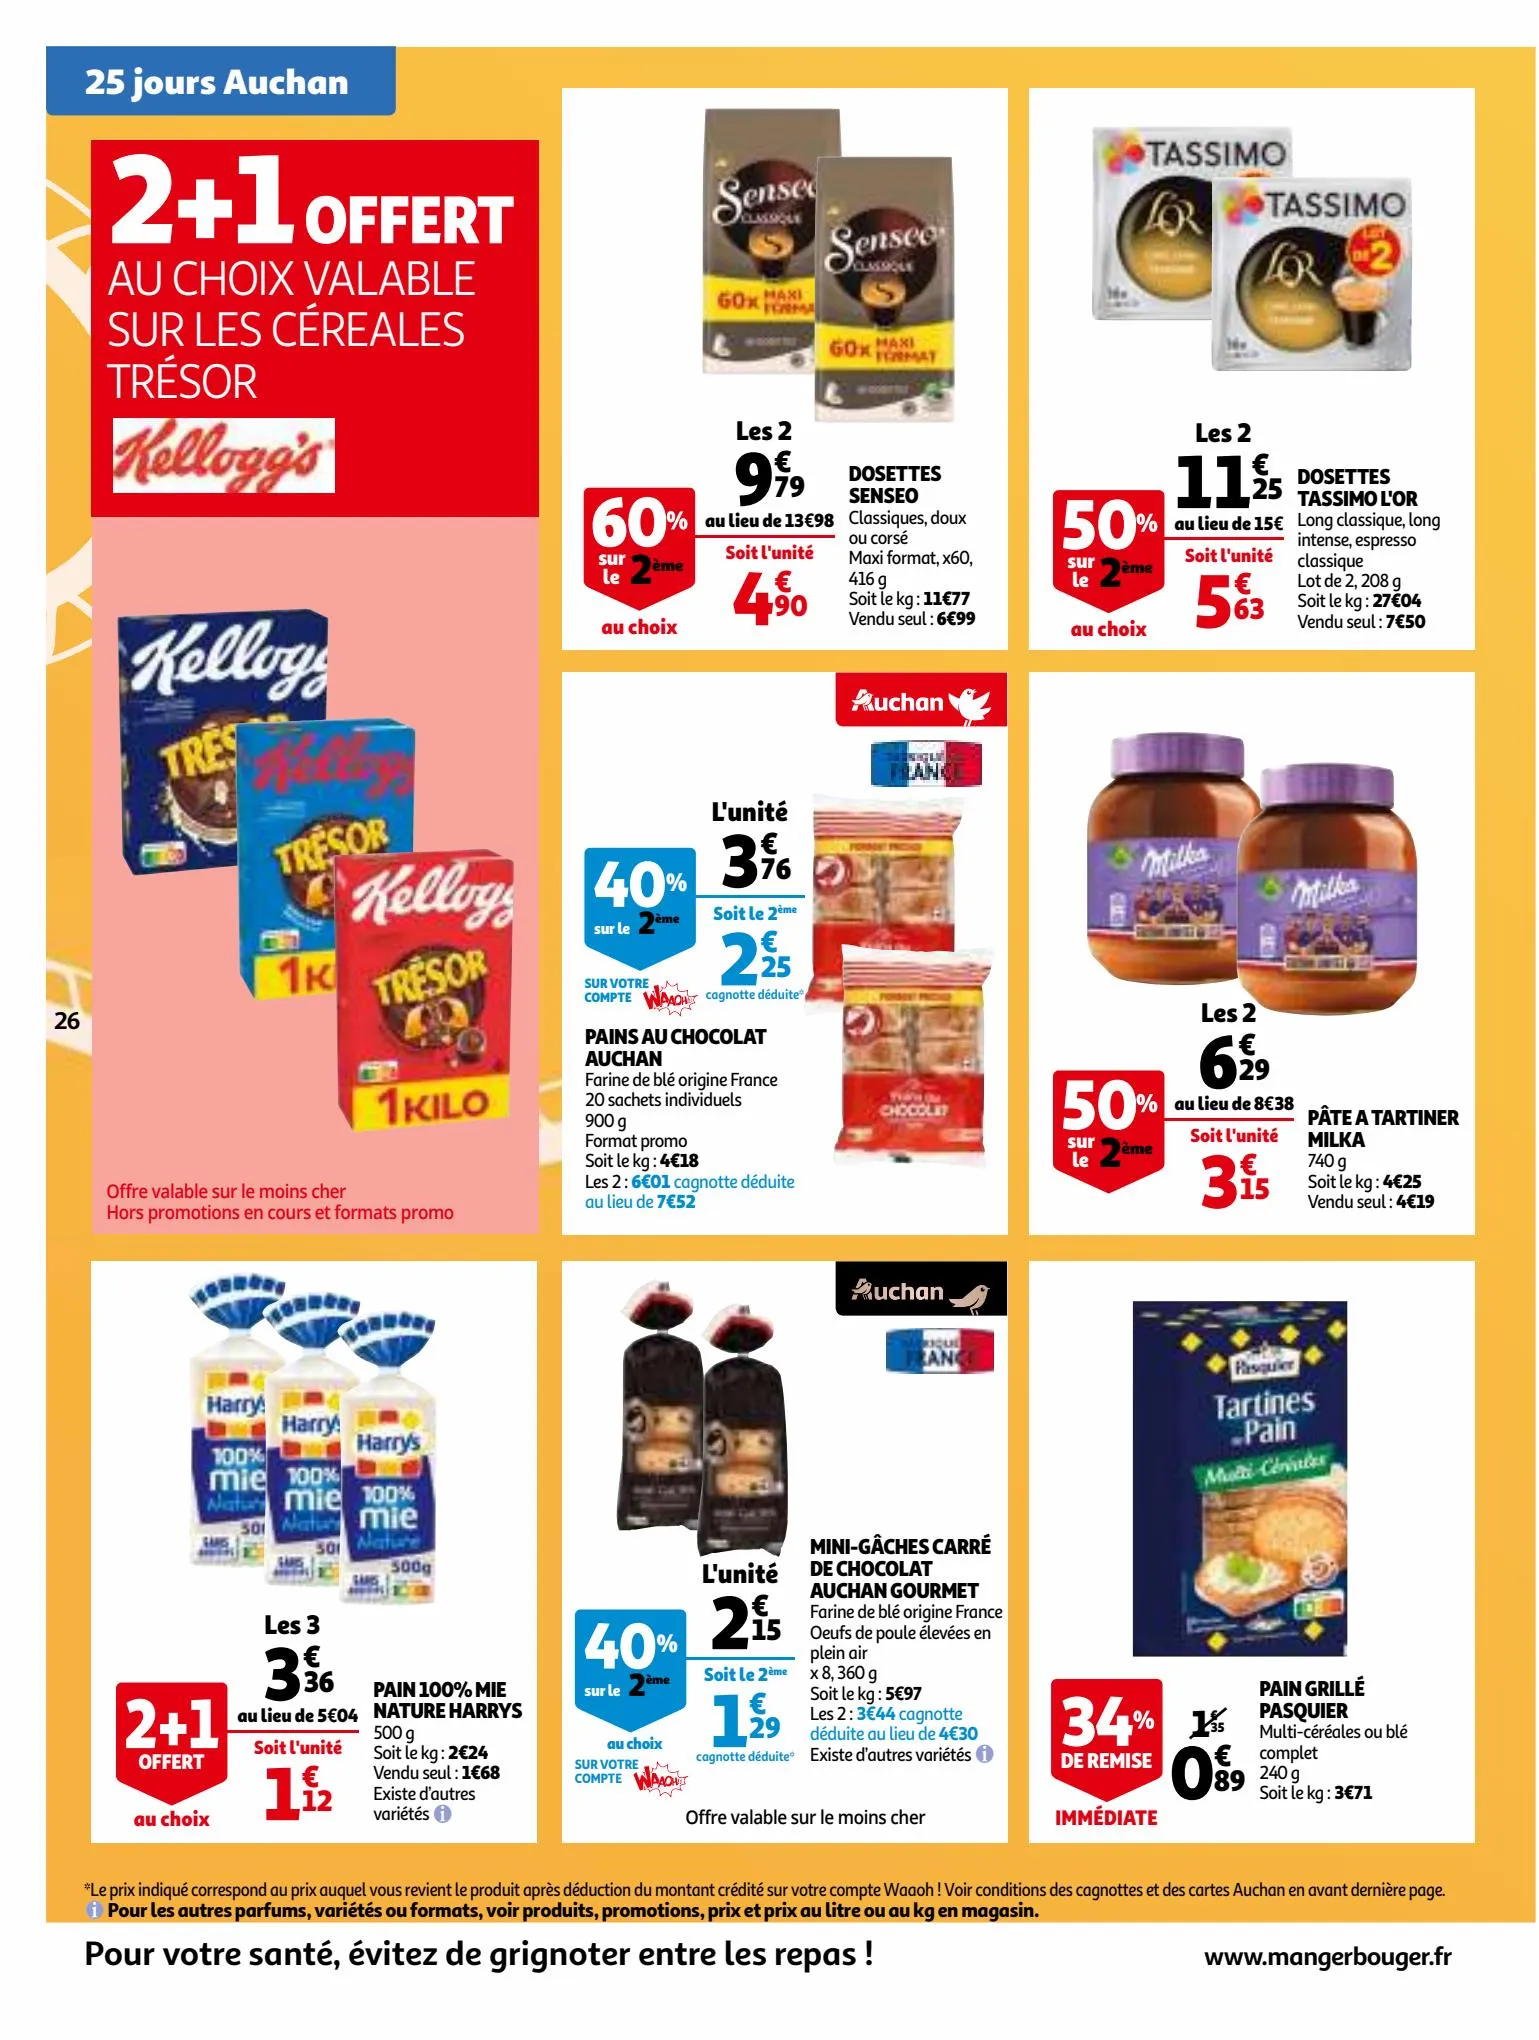 Catalogue 25 Jours Auchan, page 00026